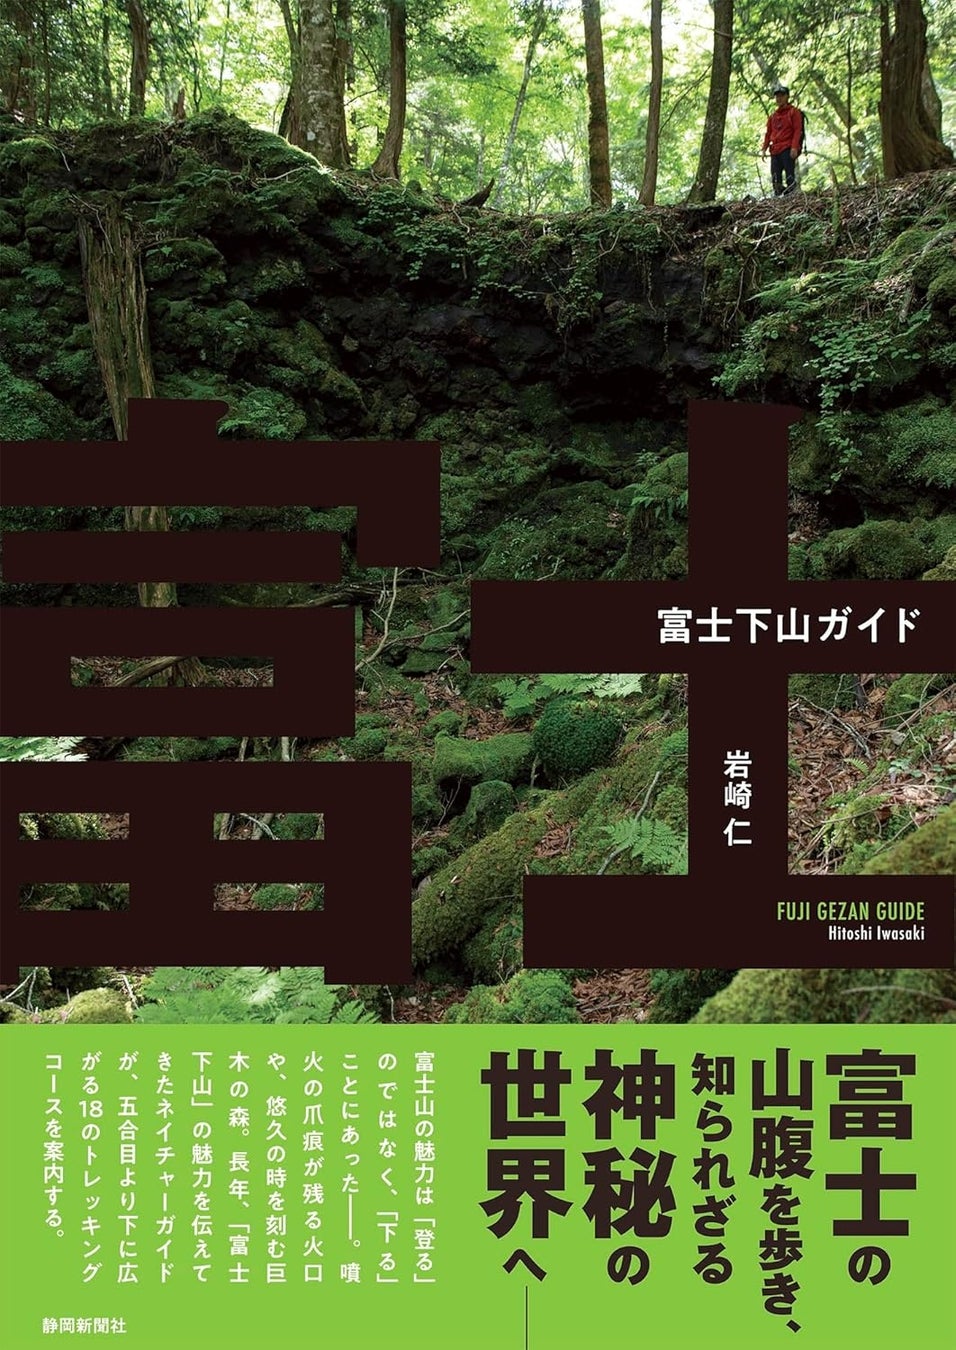 富士山の魅力は「登る」のではなく「下る」にあり!? 密かなブームとなっている『富士下山』のガイド本が発売